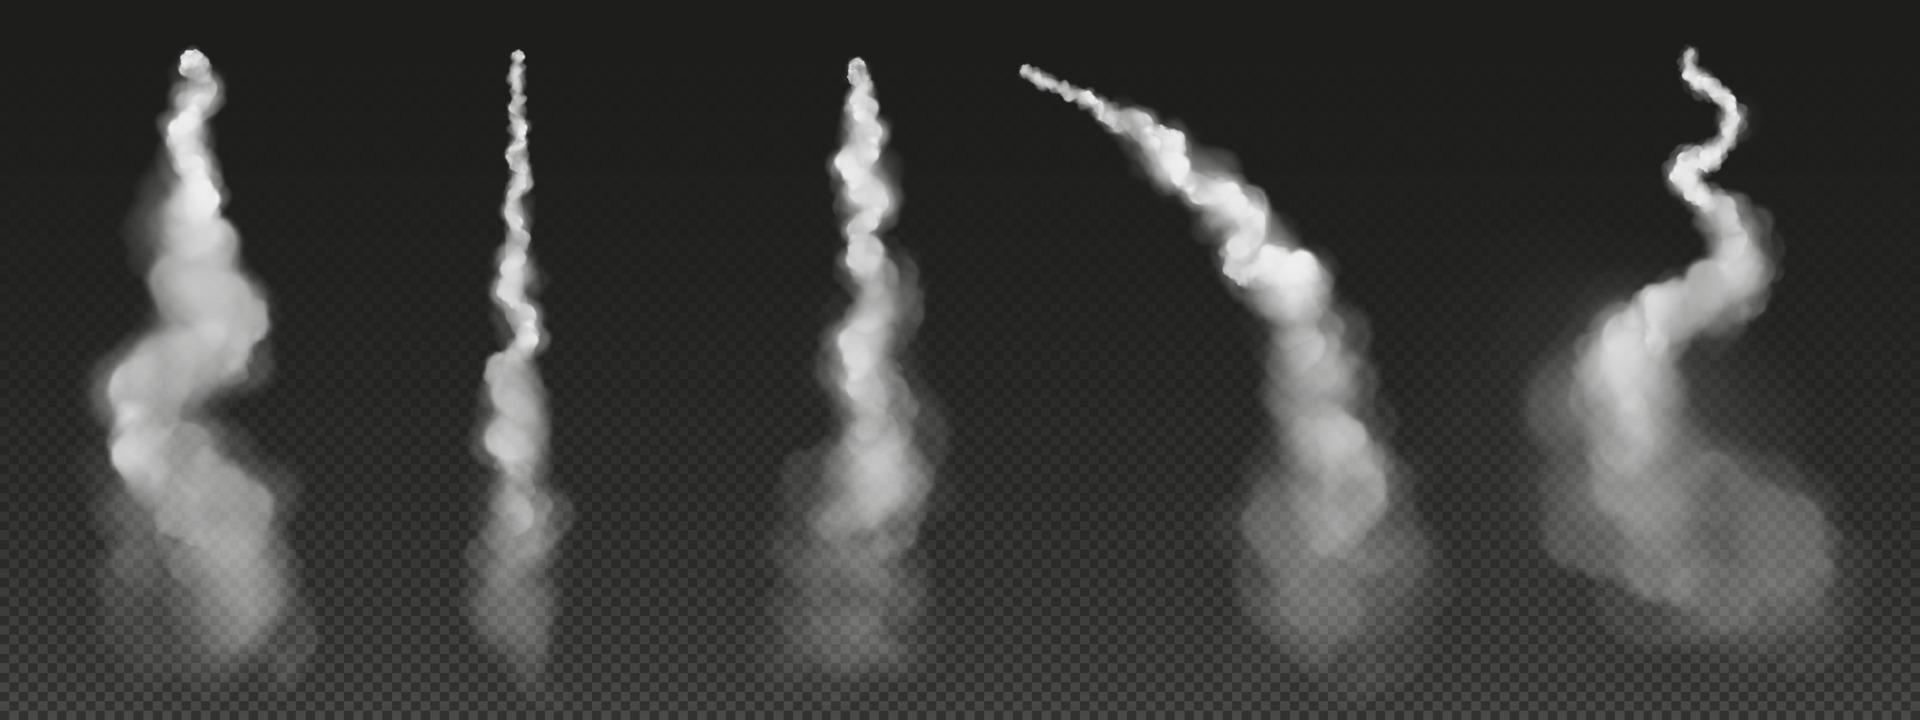 raket spår, flygplan rök, plan eller jet moln vektor